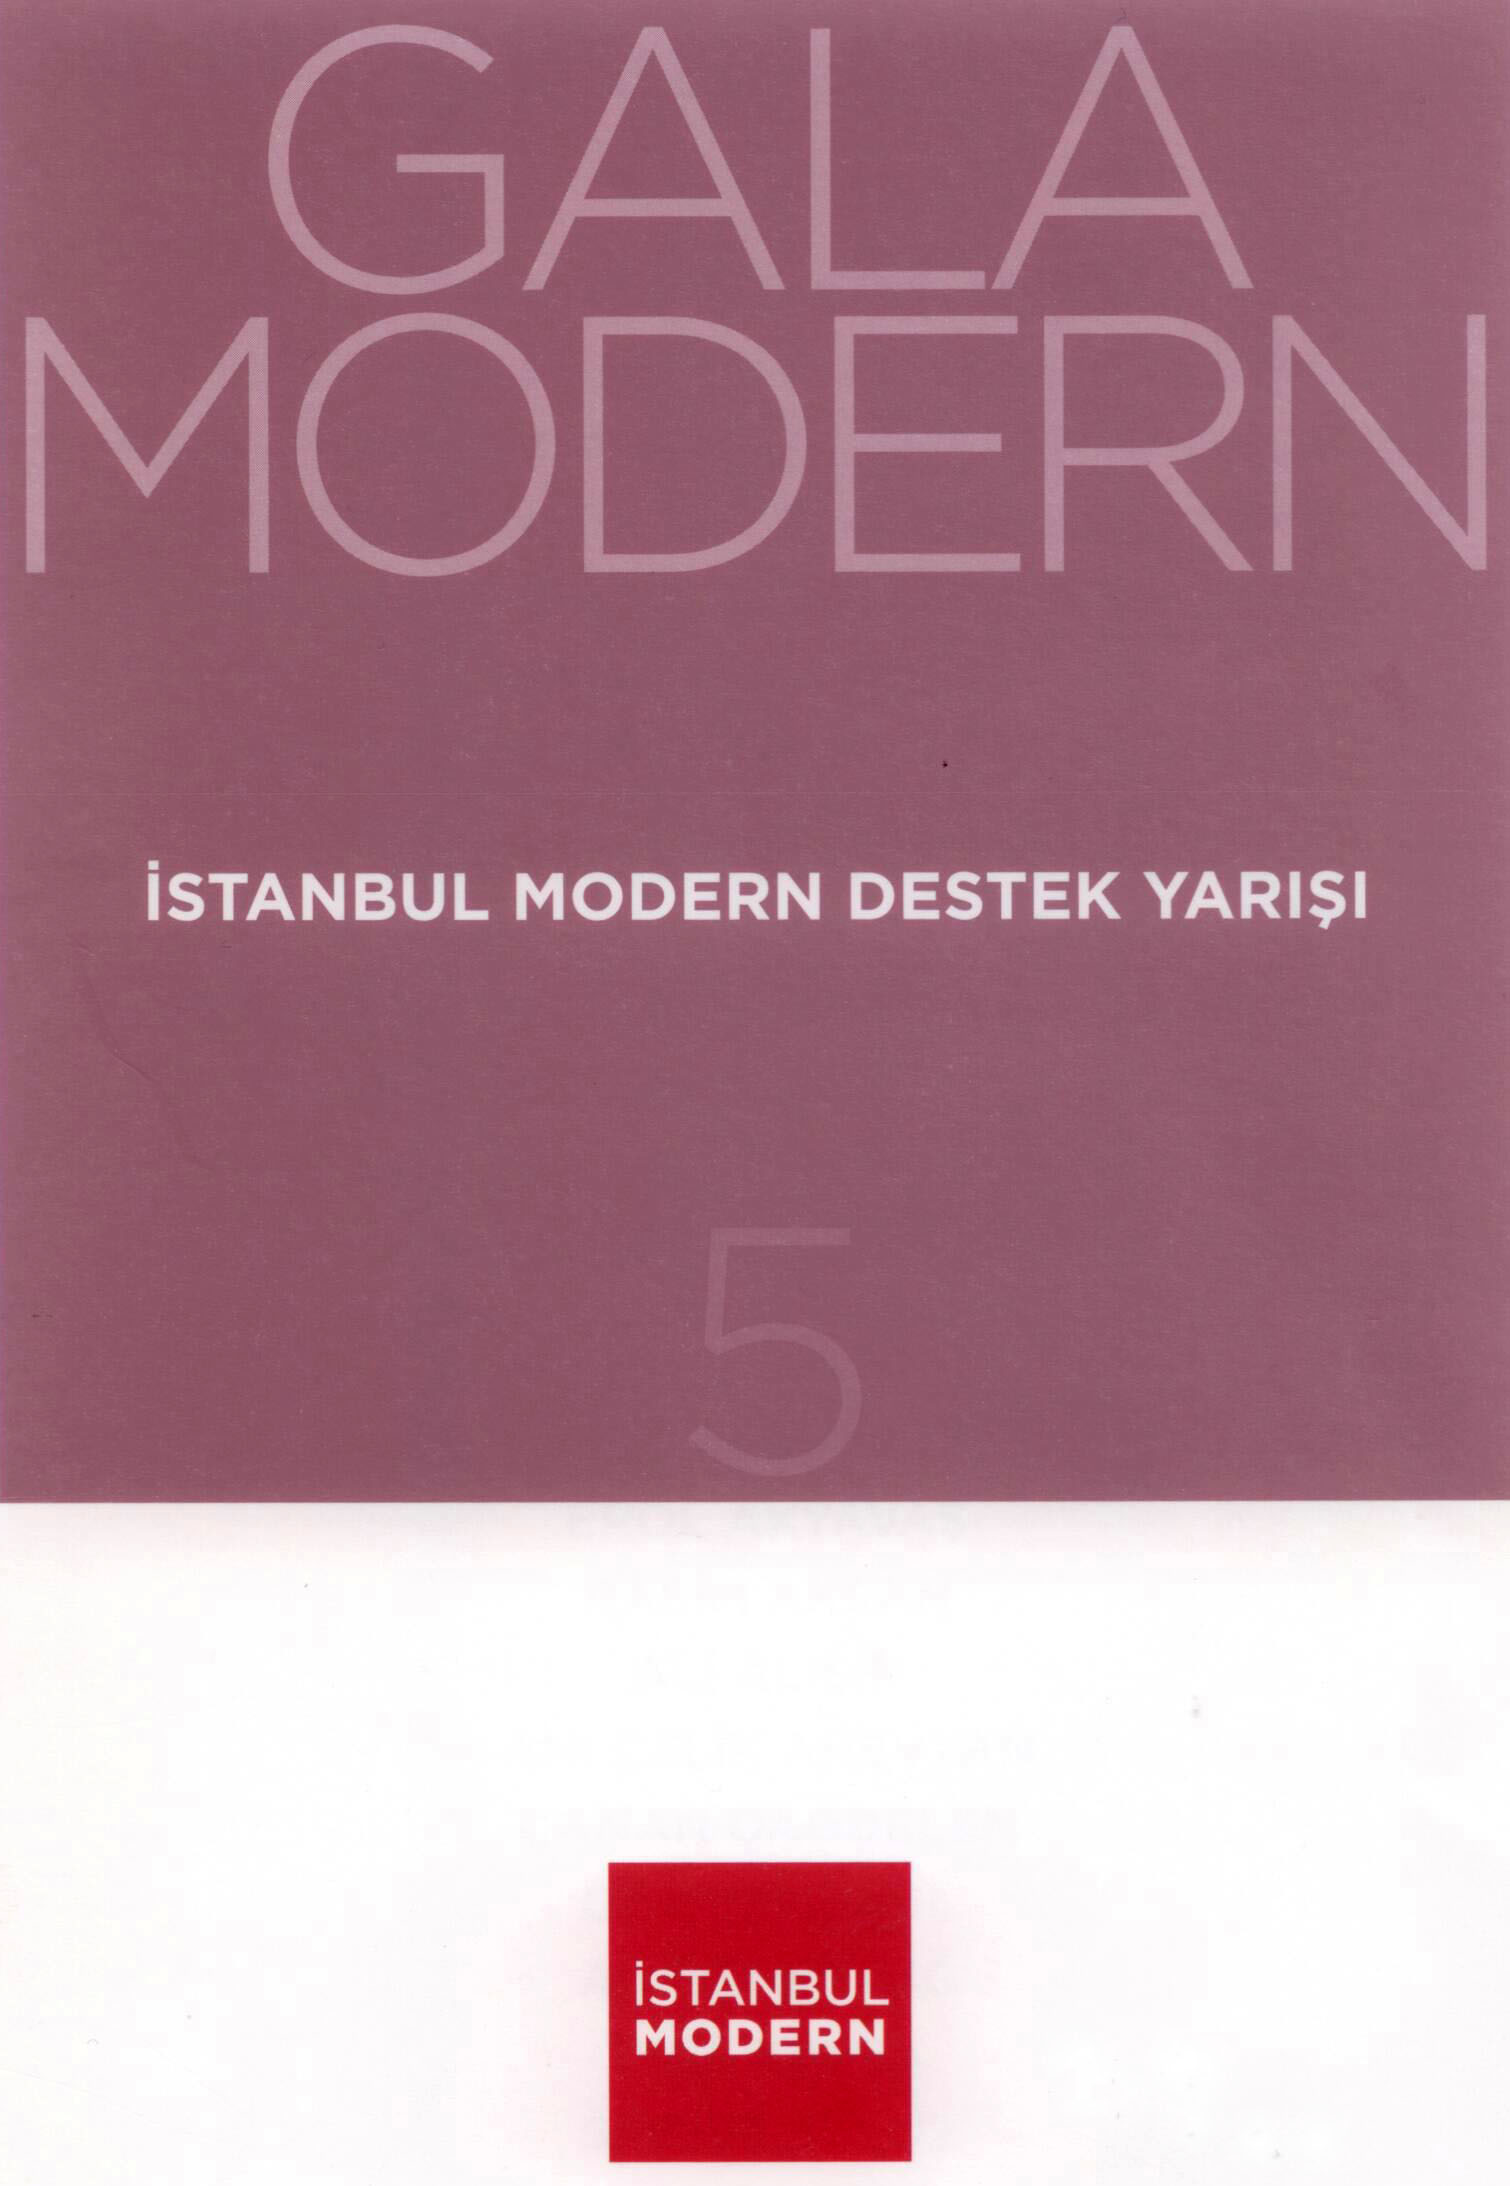 18/12/2013 - Aslı Torcu İstanbul Modern'in düzenlediği Gala Modern'de